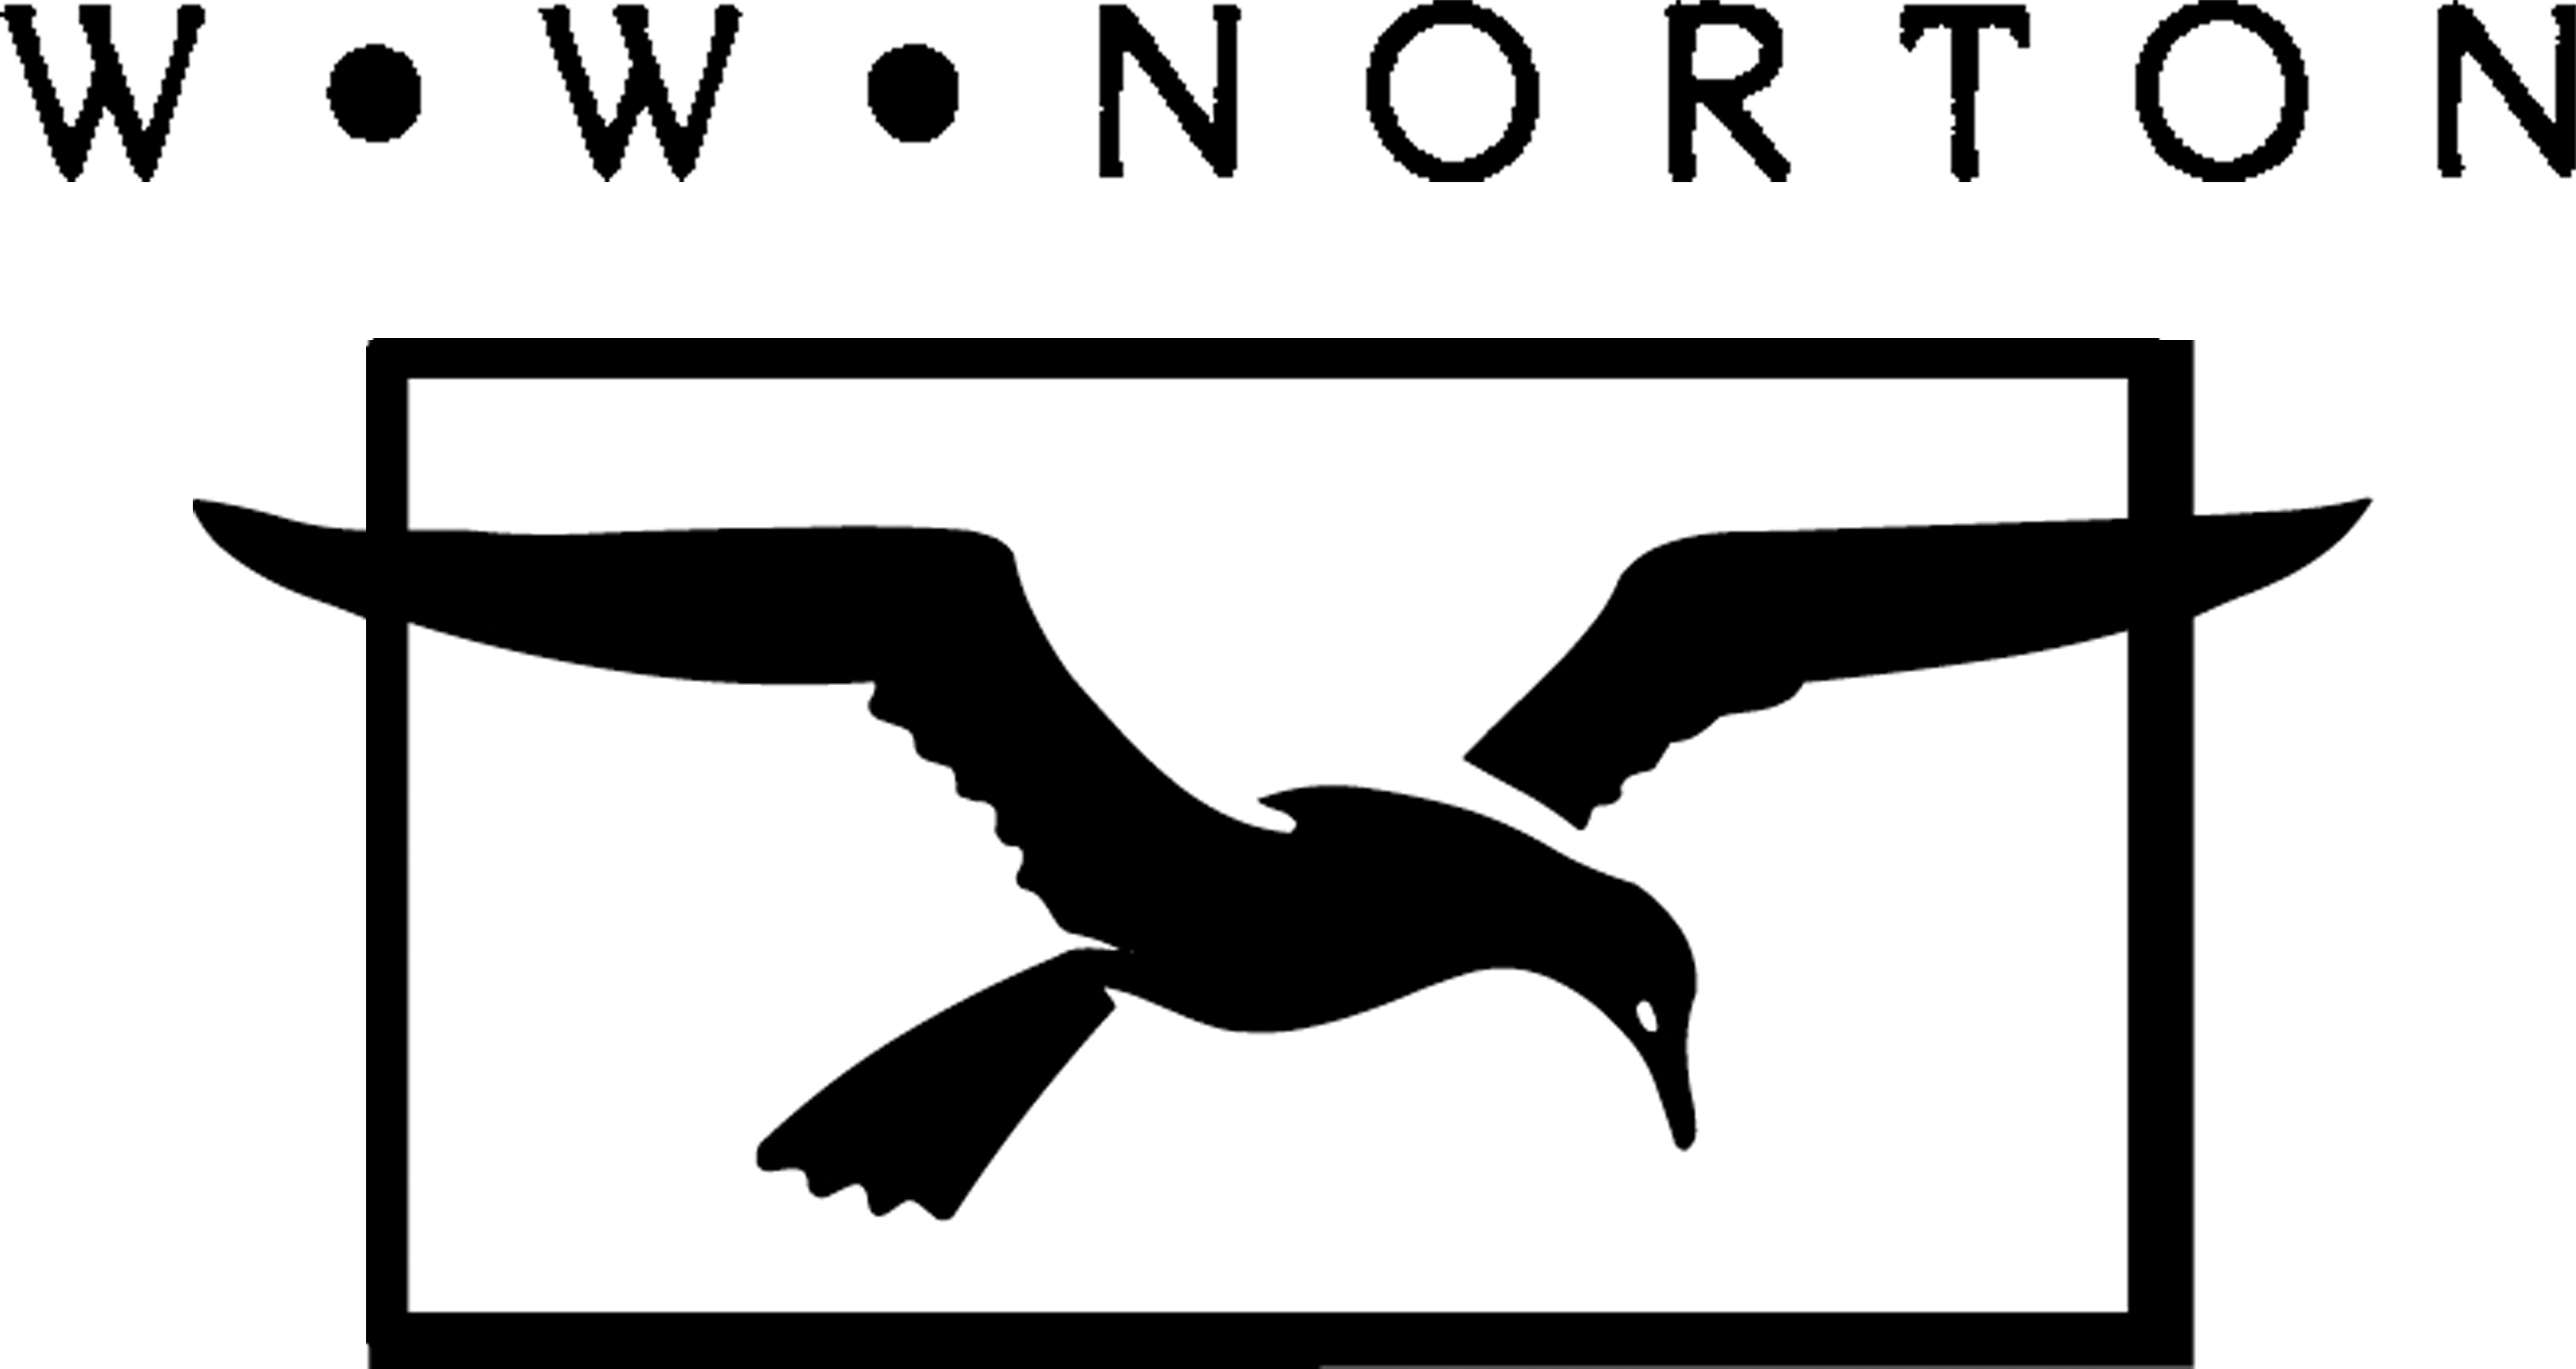 W. W. Norton